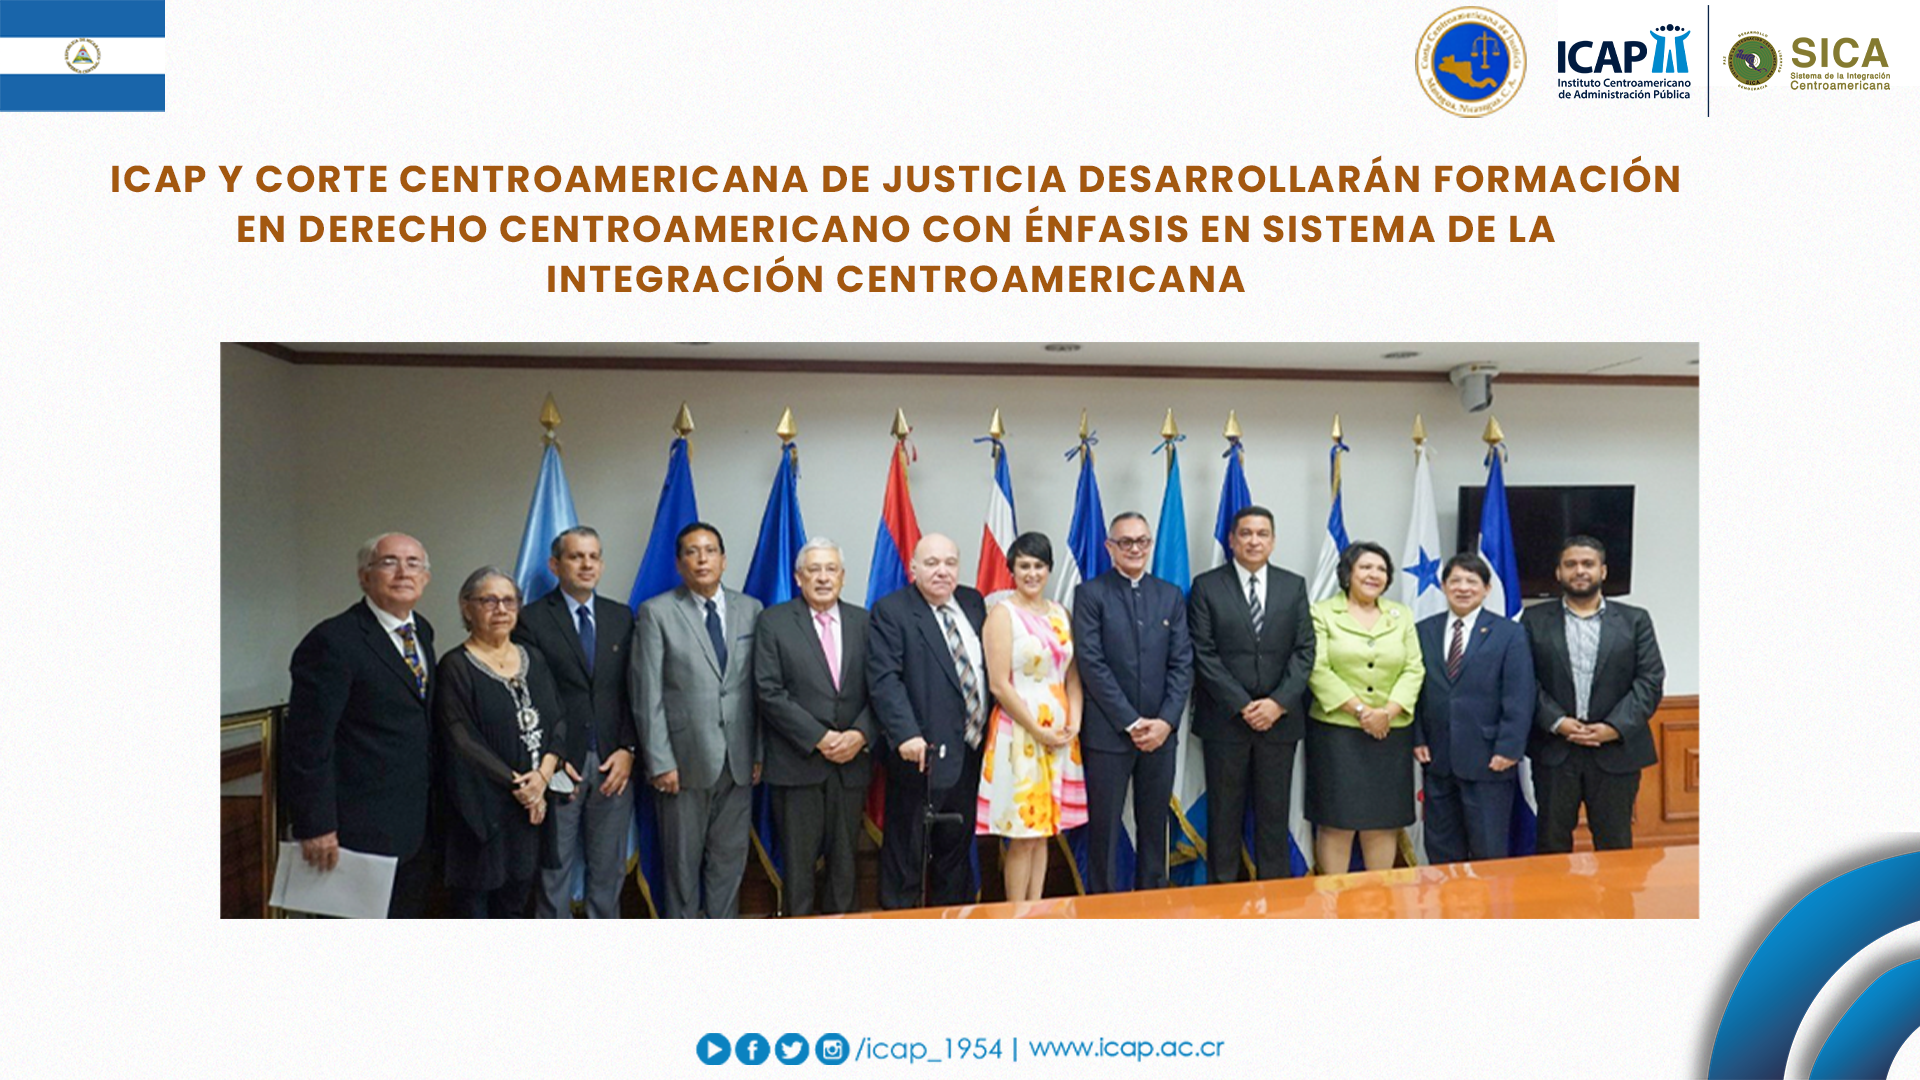 ICAP y Corte Centroamericana de Justicia desarrollarán programa conjunto para formar capacidades